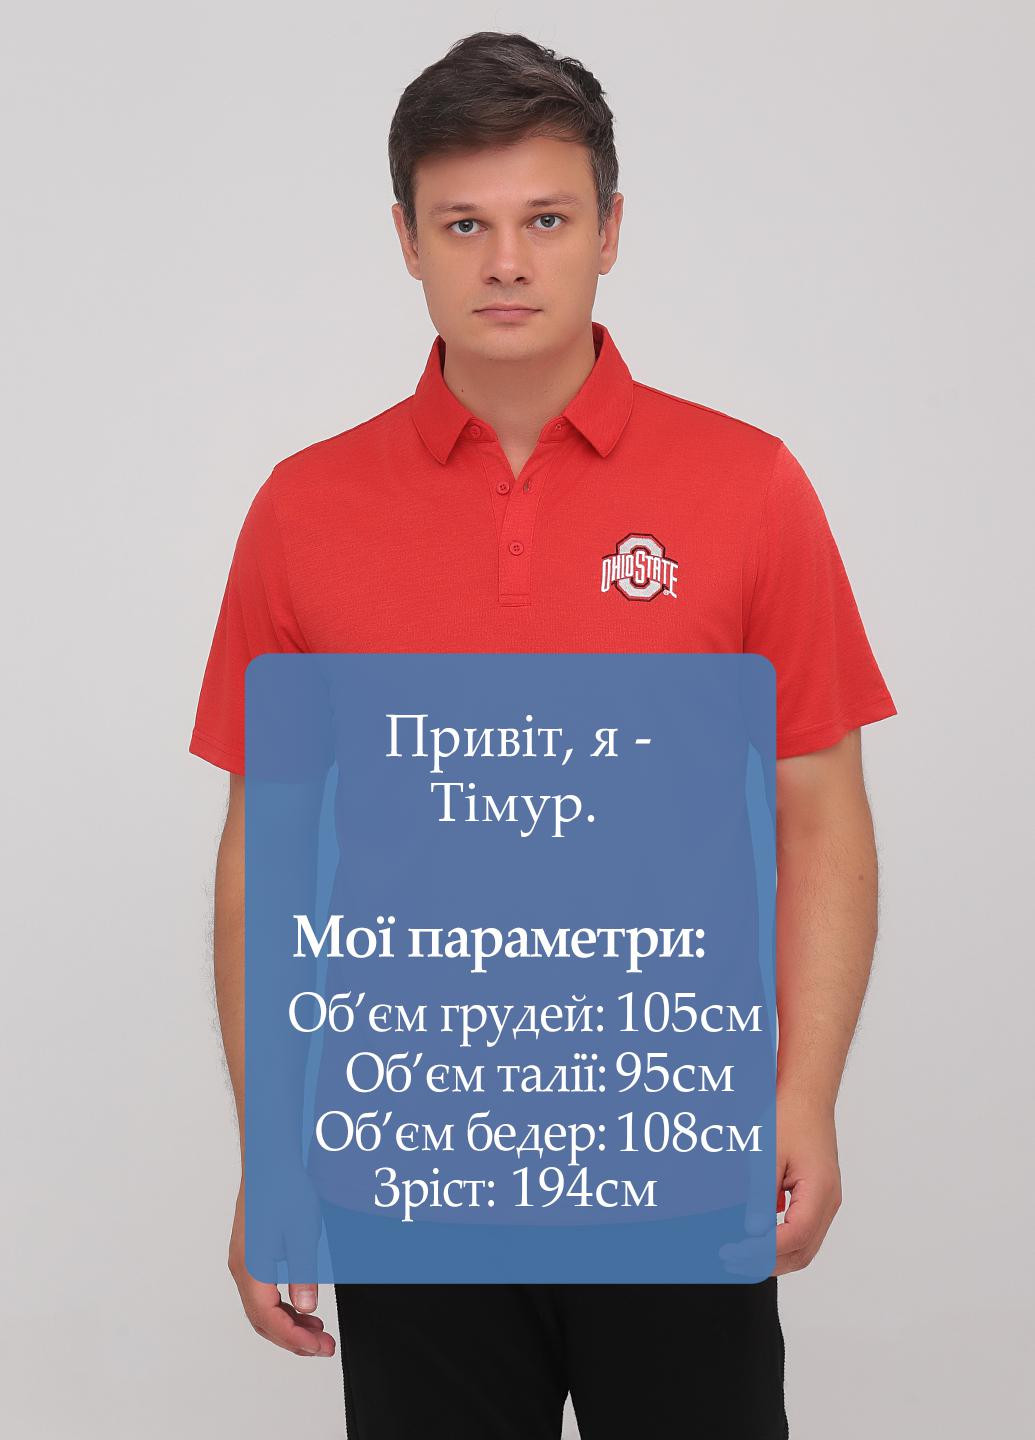 Коралловая футболка-поло для мужчин OHIO однотонная